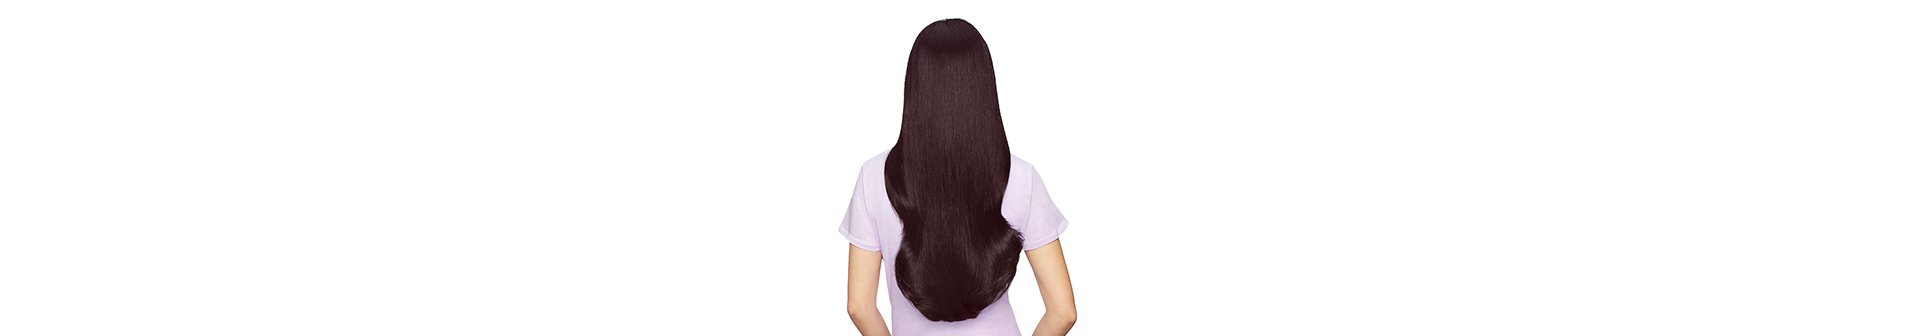 Rückansicht einer Frau mit langen glatten dunkelbraunen Haaren